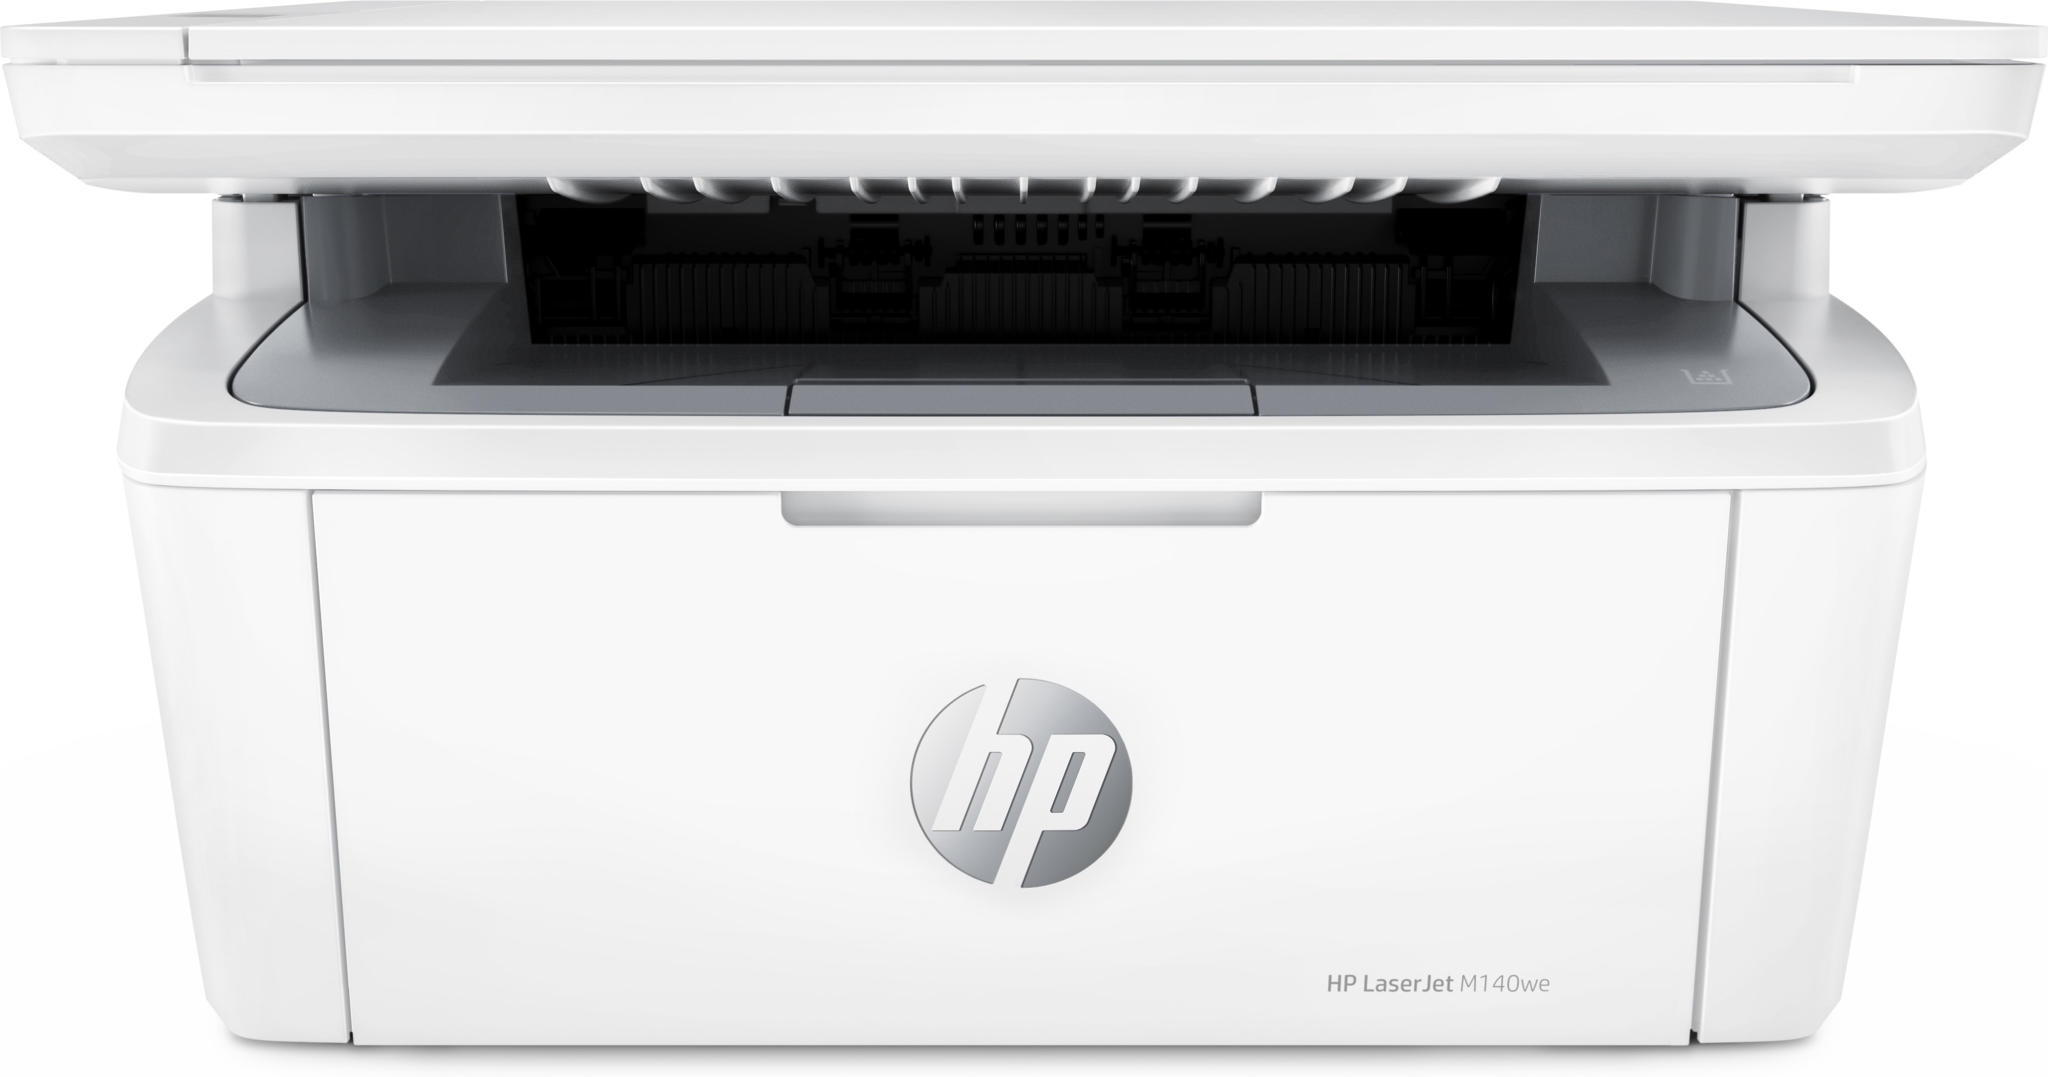 HP Laserjet M140we printer